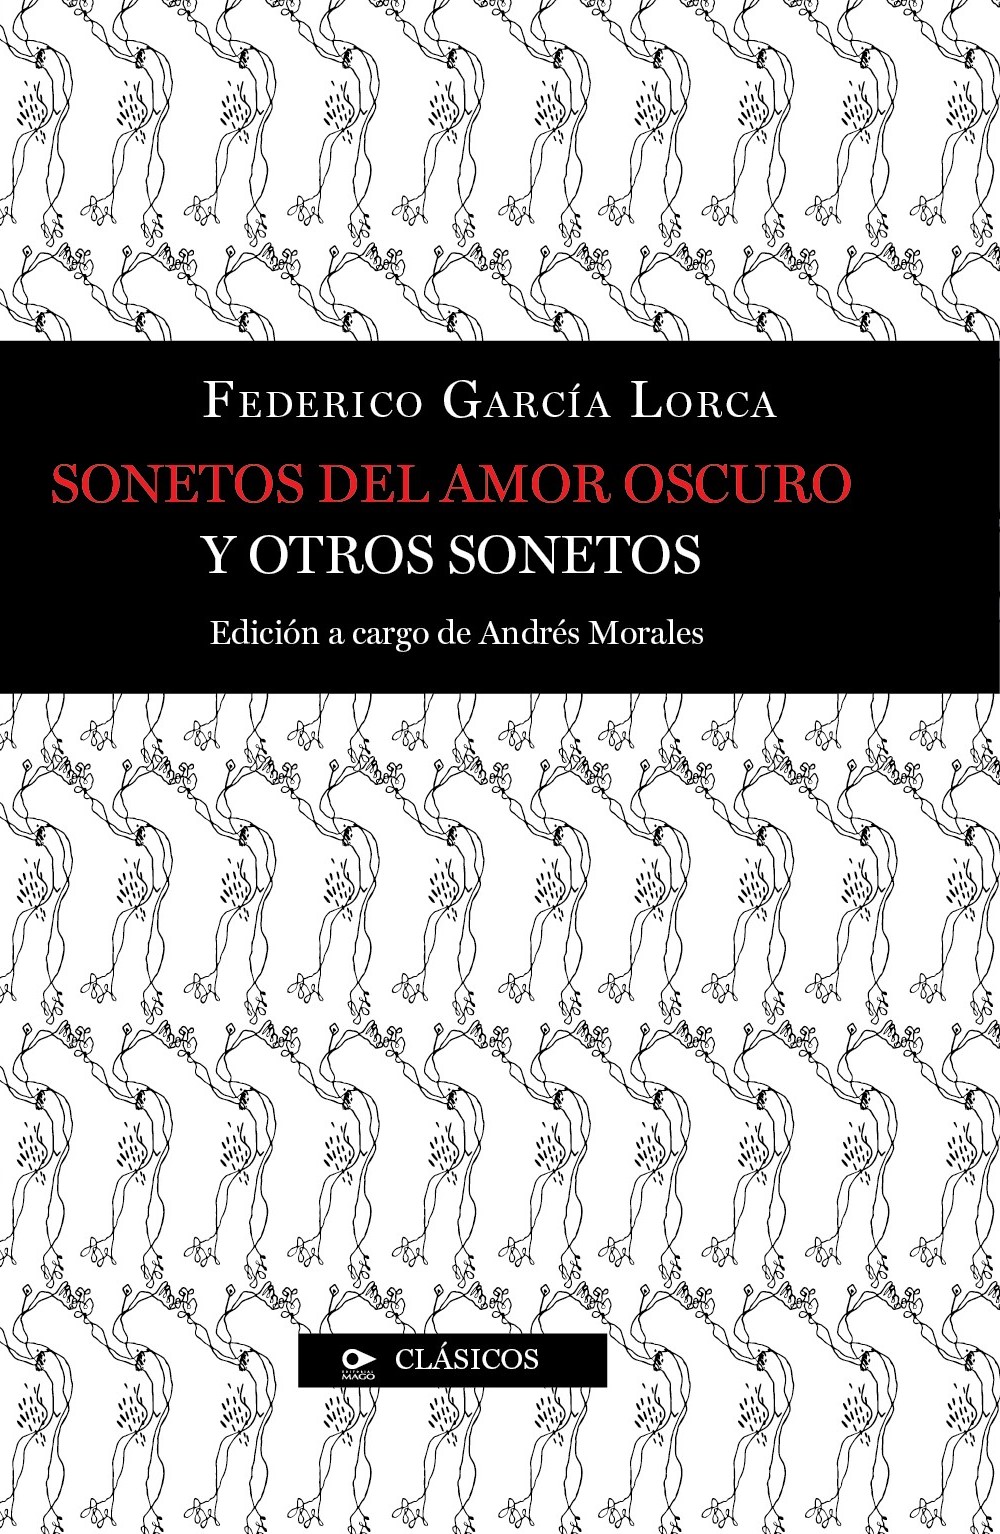 "SONETOS DEL AMOR OSCURO Y OTROS SONETOS" (EDICIÓN DE ANDRÉS MORALES)